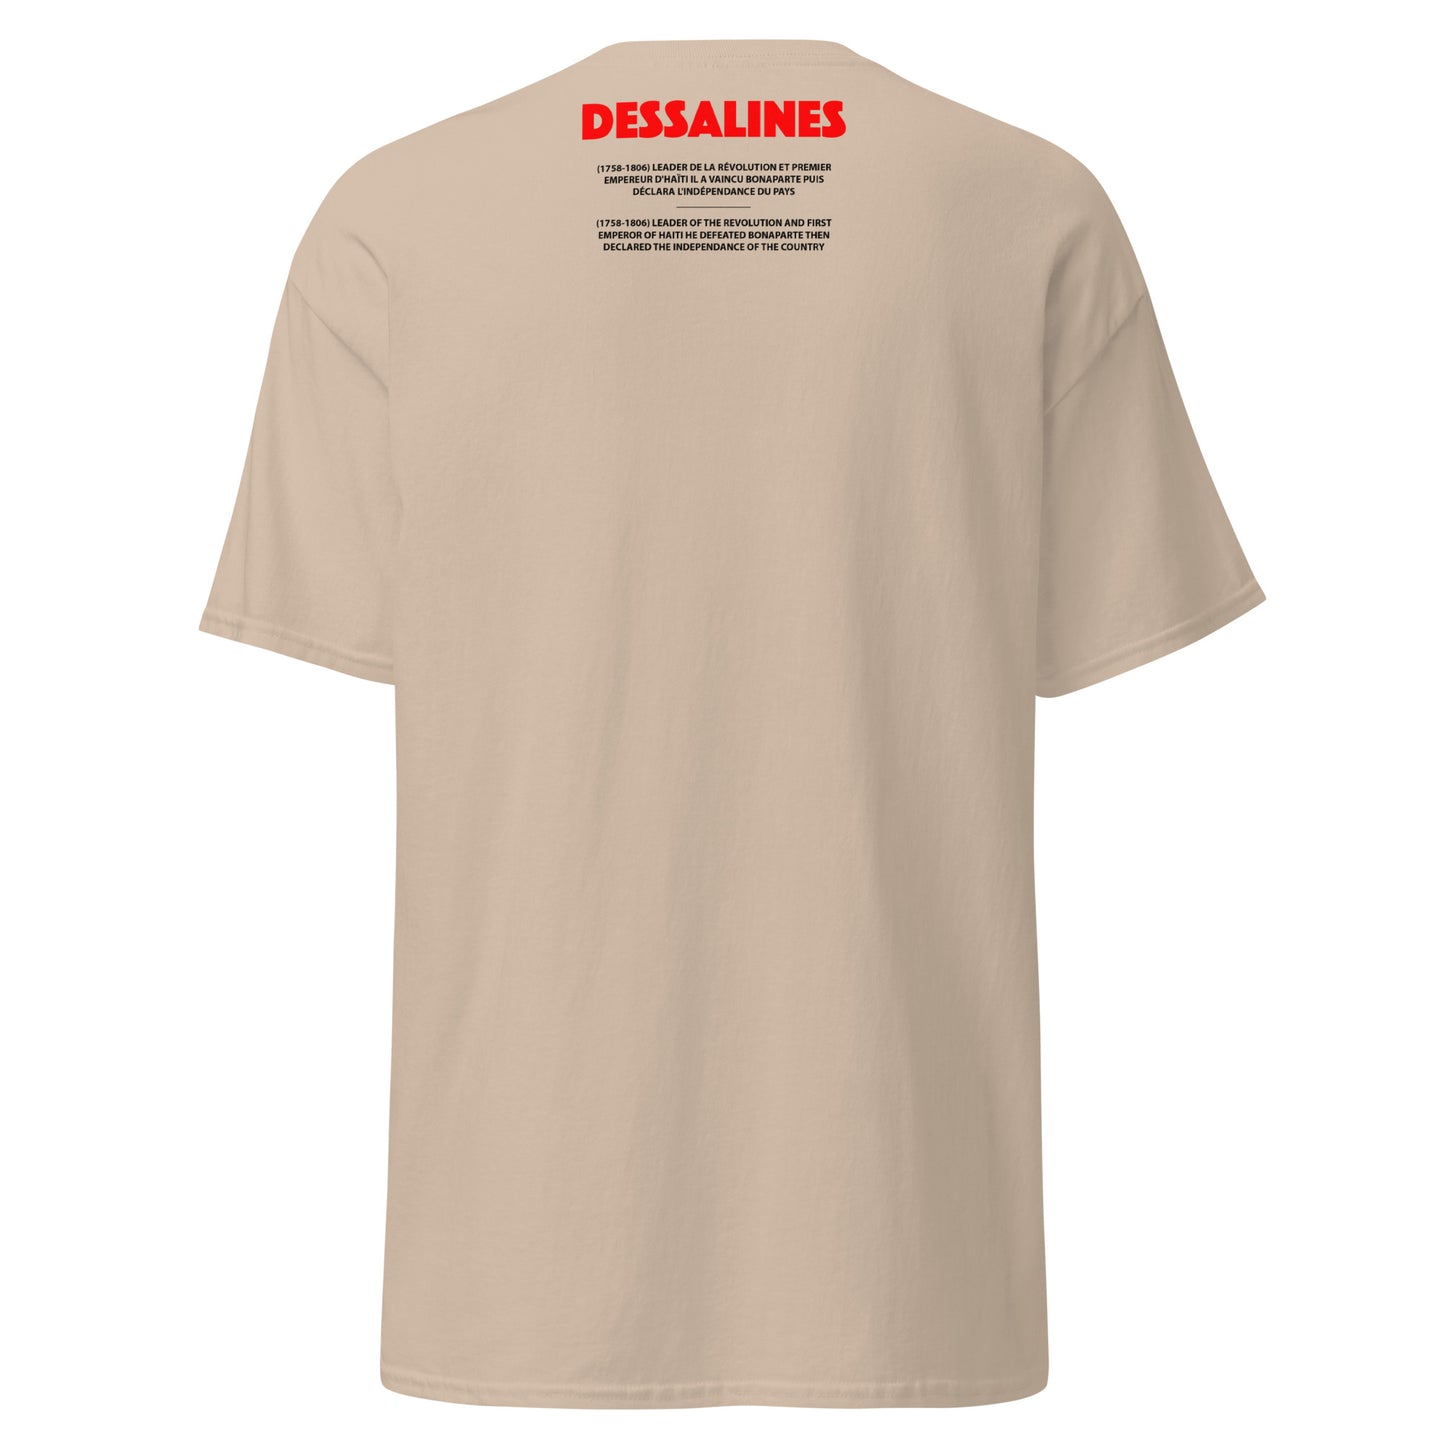 DESSALINES (T-shirt)